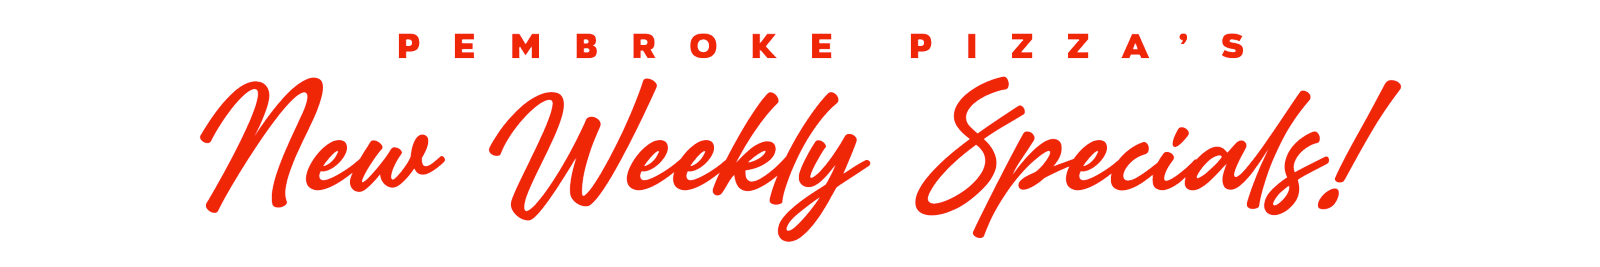 Pembroke-Pizza-Weekly-Specials-TXT-SDCPRINTS.COM